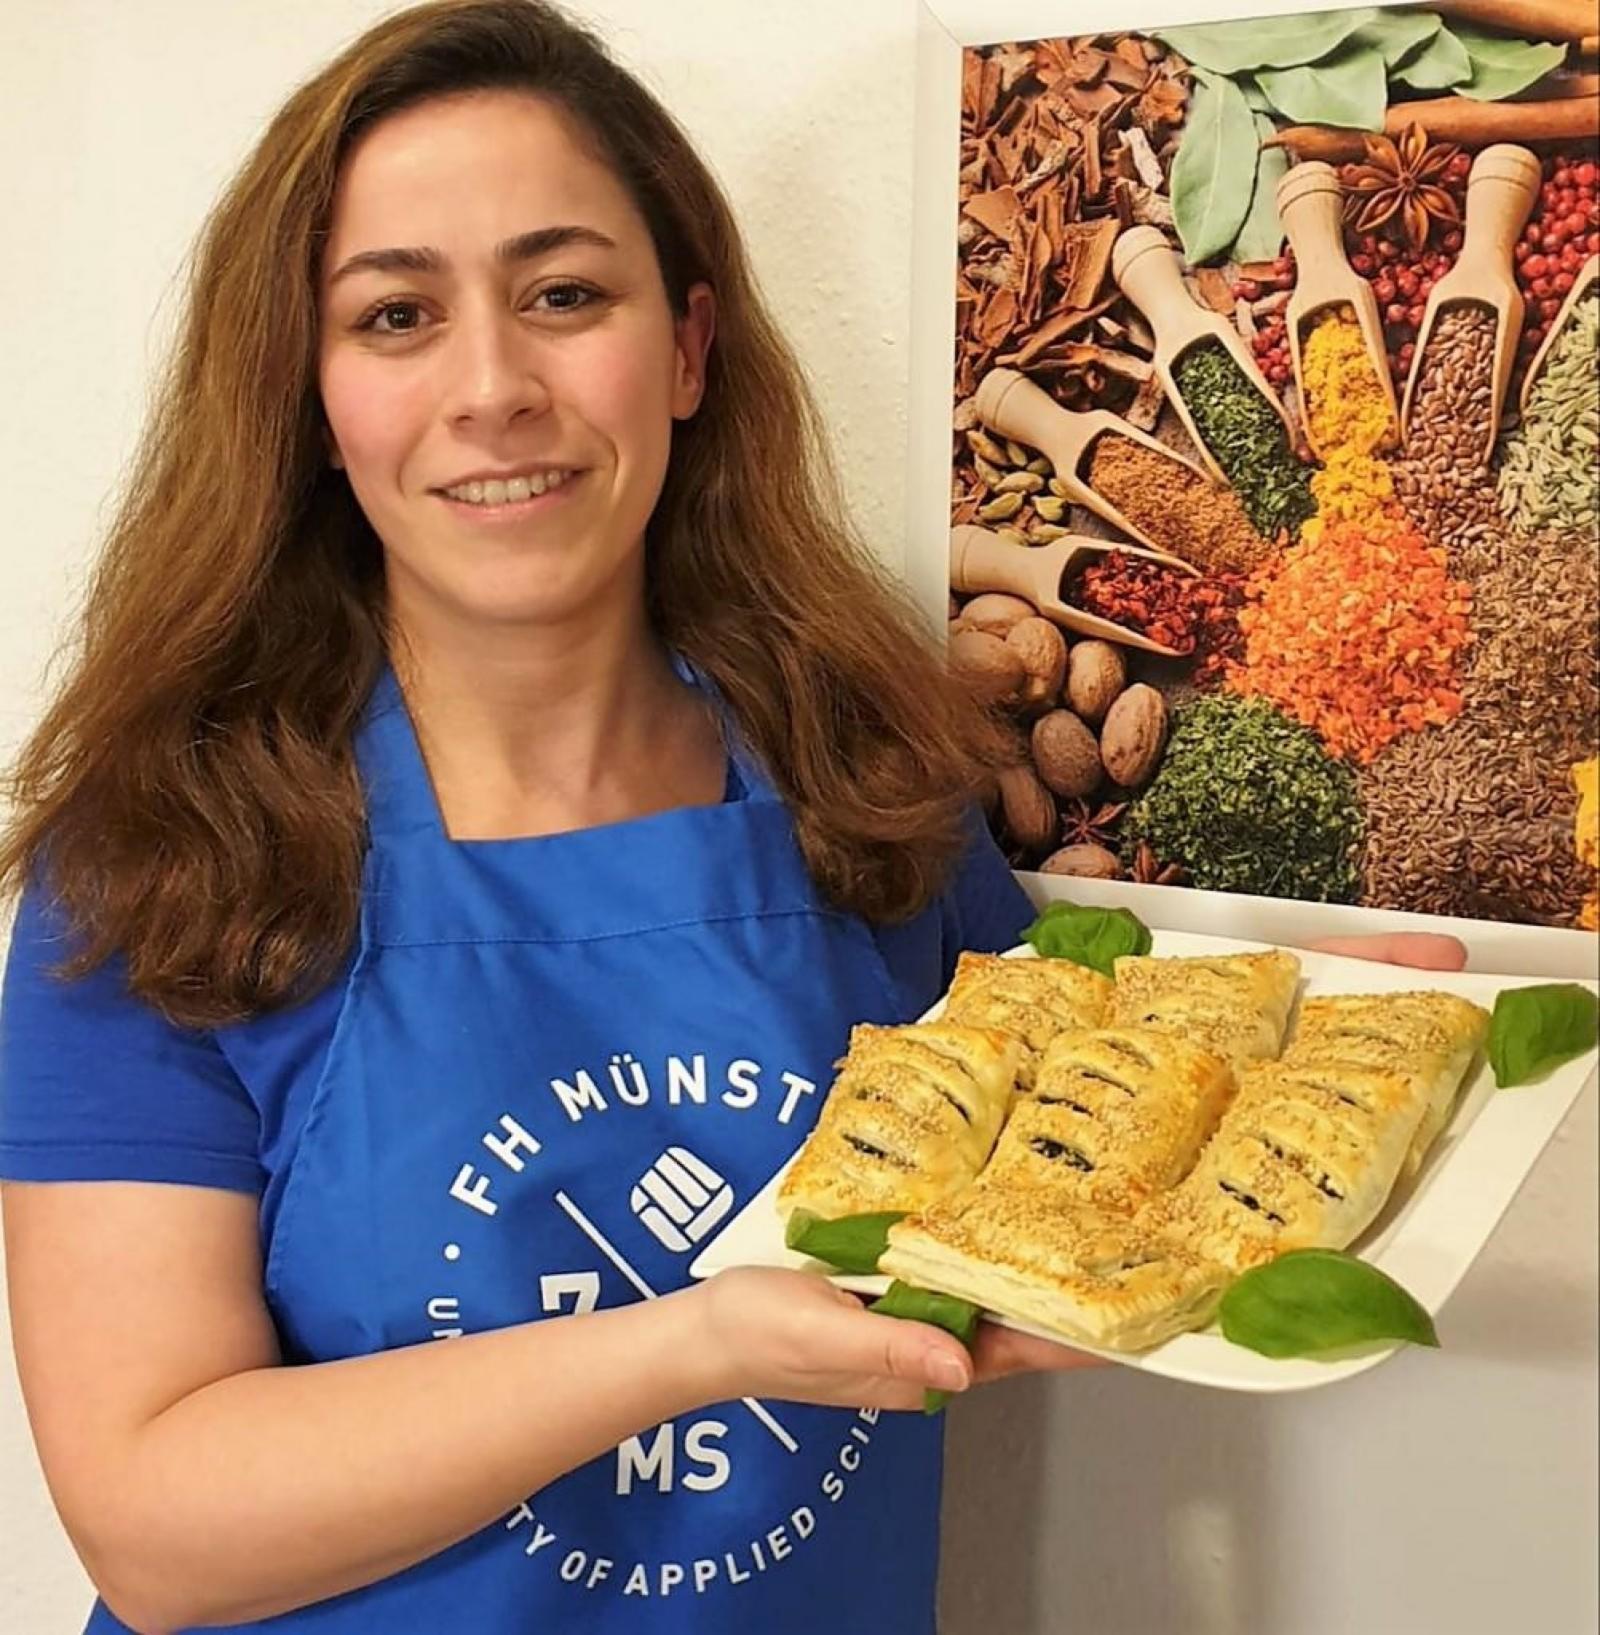 Sanaz Seeberger, Tutorin im Team von FHiRST, mit dem von ihr gekochten Gericht: gefüllte Teigtaschen. (Foto: Sanaz Seeberger) 